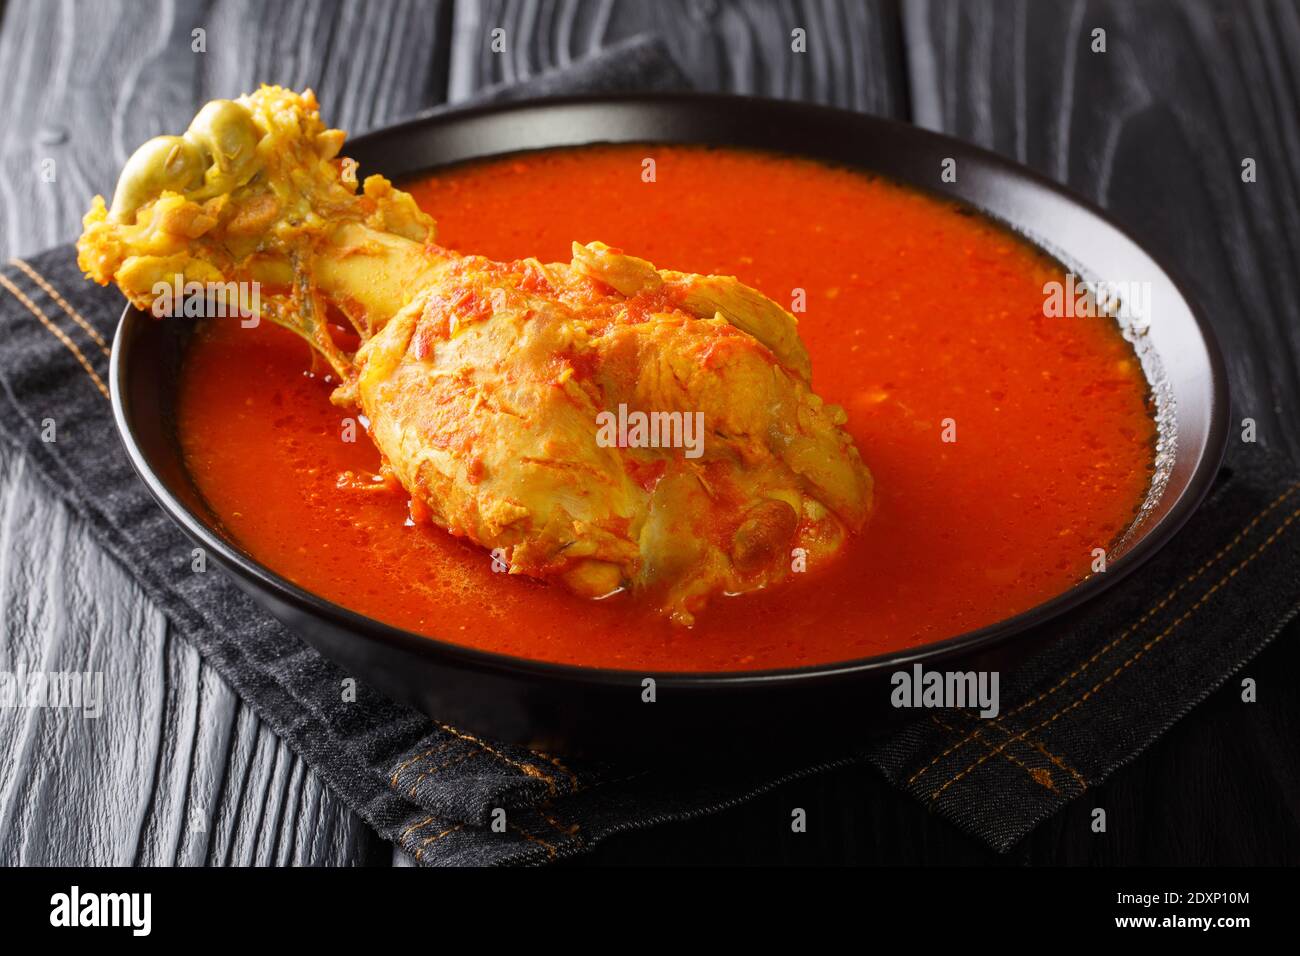 Zuppa di tacchino dell'America centrale in brodo vegetale rosso con spezie da vicino in un recipiente sul tavolo. Orizzontale Foto Stock